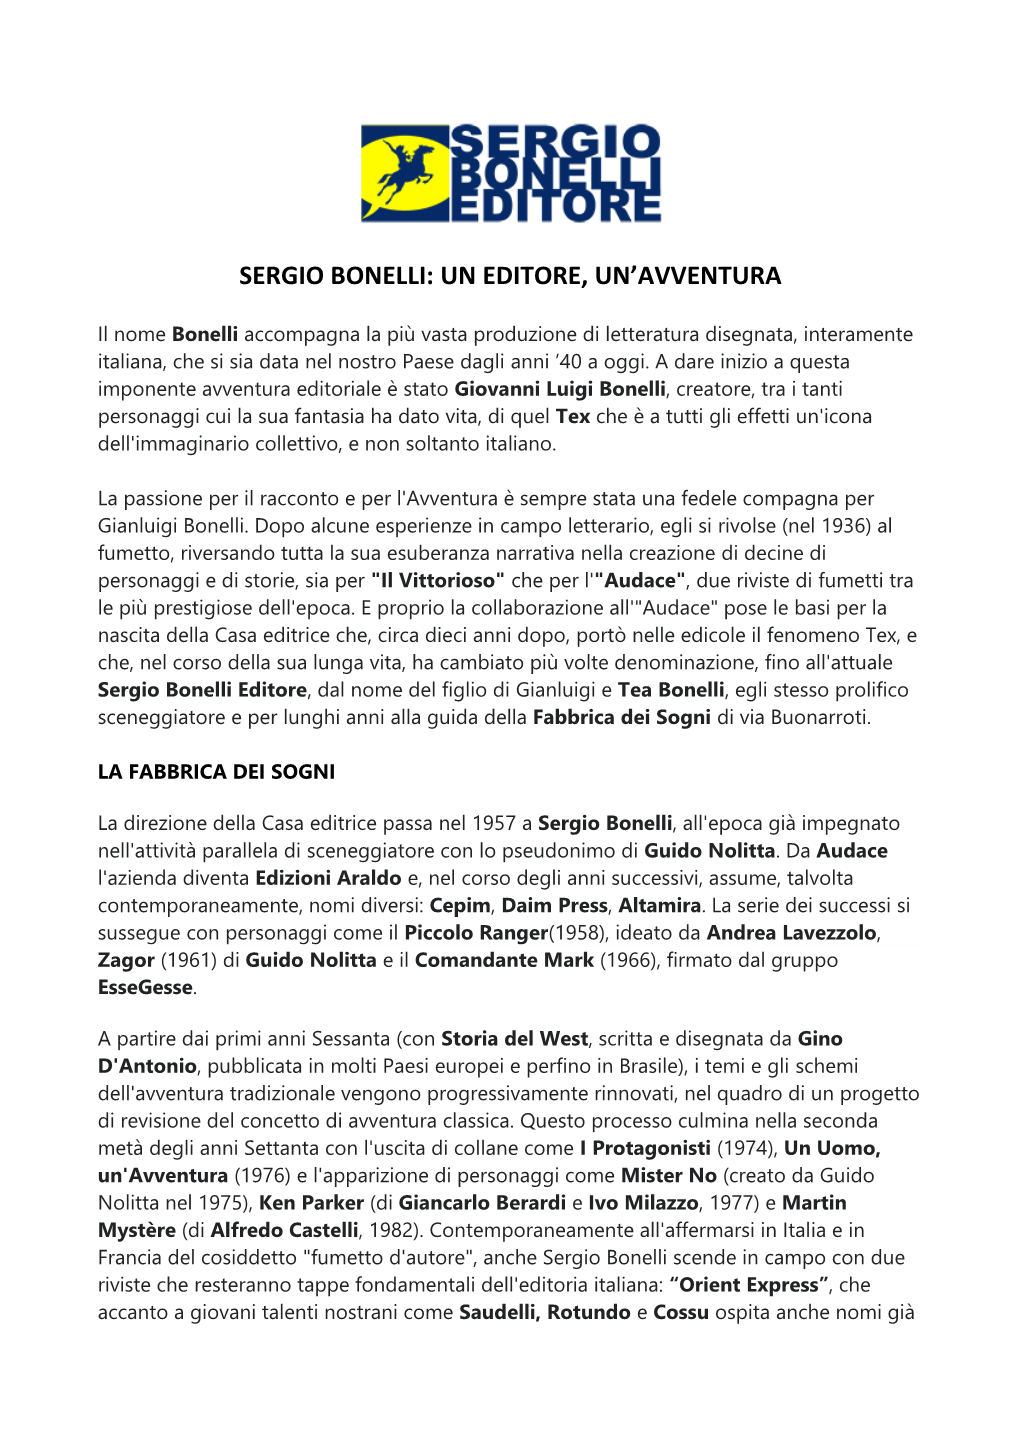 Sergio Bonelli: Un Editore, Un'avventura